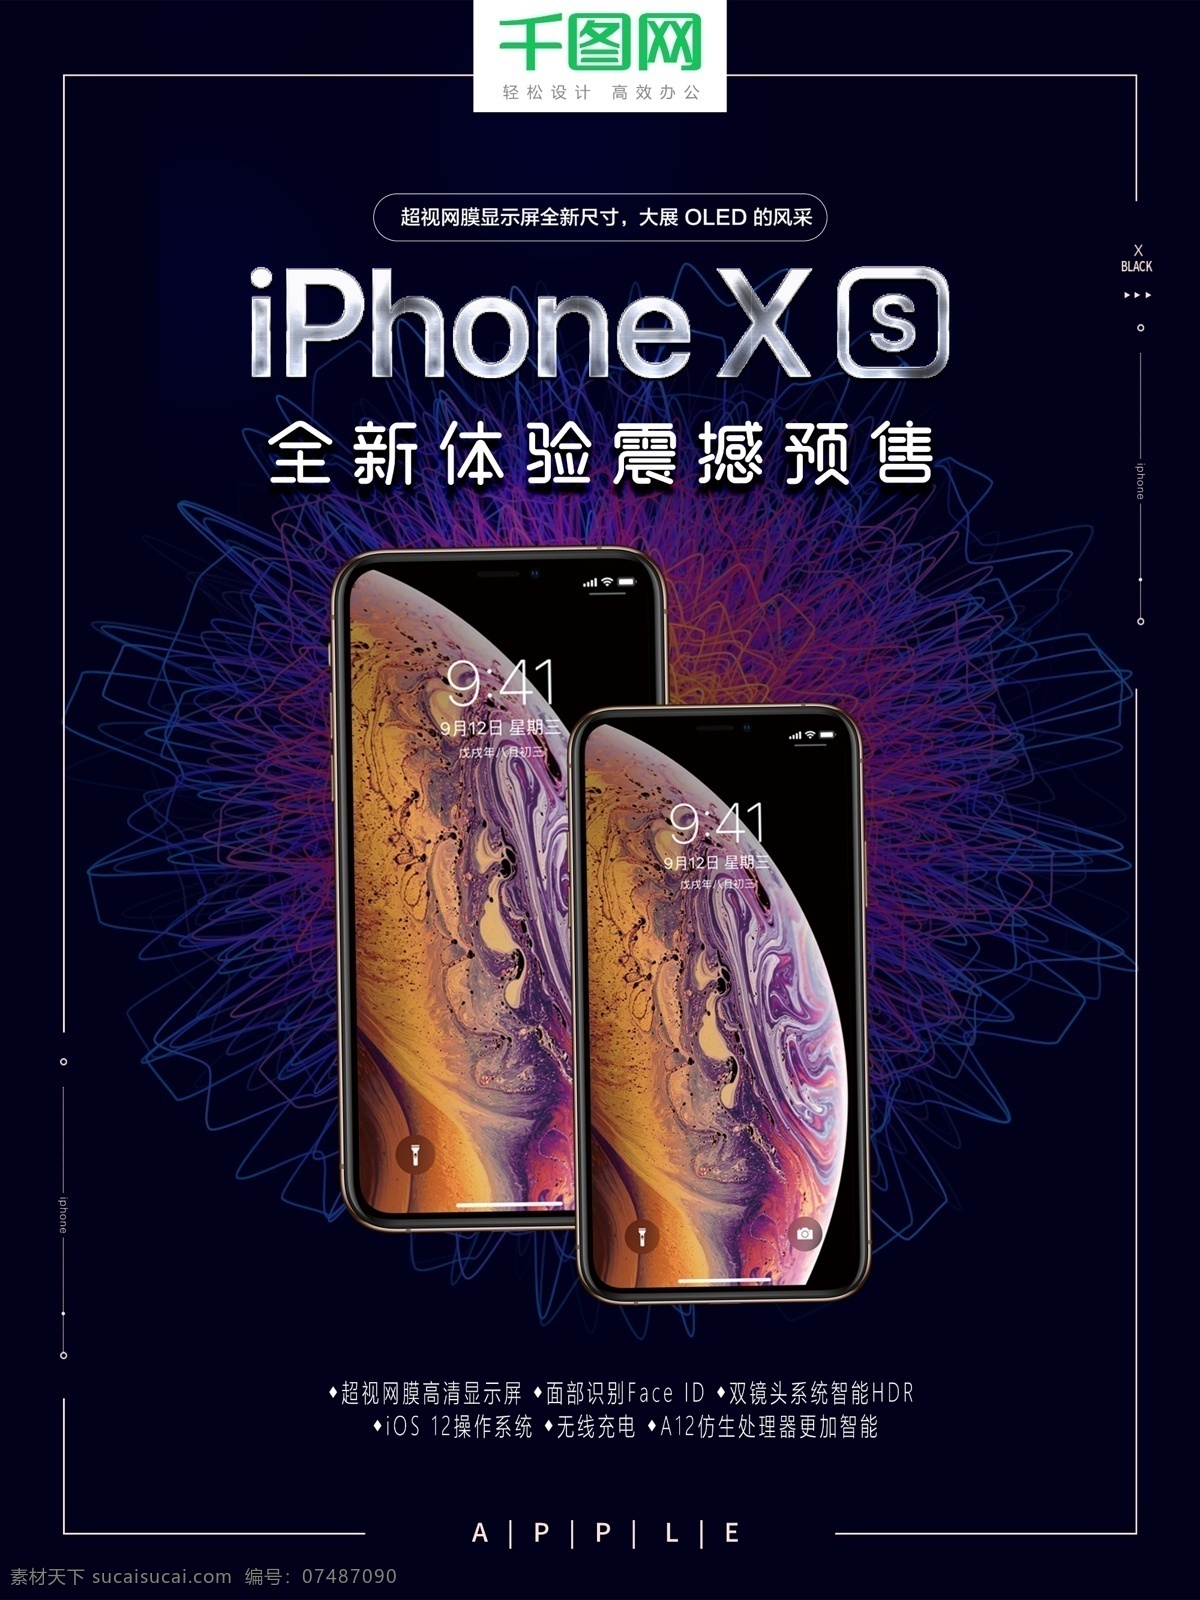 2018 年 iphonexs 新品 预售 海报 苹果预售海报 苹果手机 iphone 苹果秋季新品 新款 苹果